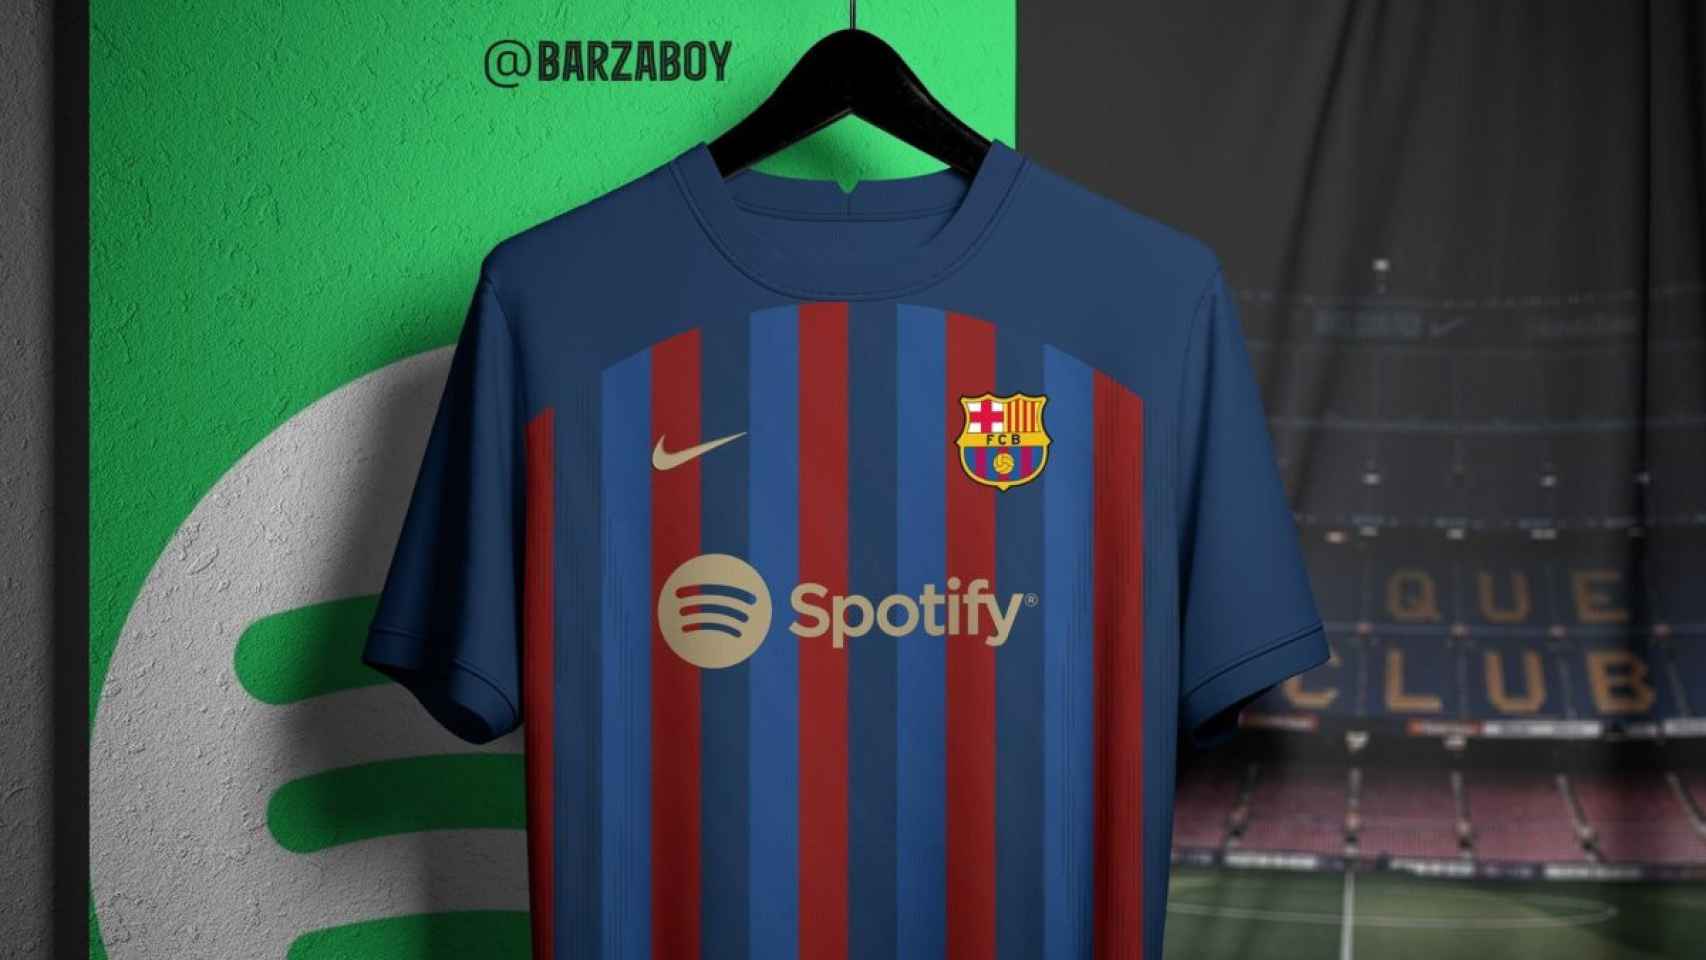 Posible nueva camiseta del Barça con el logo de Spotify / REDES